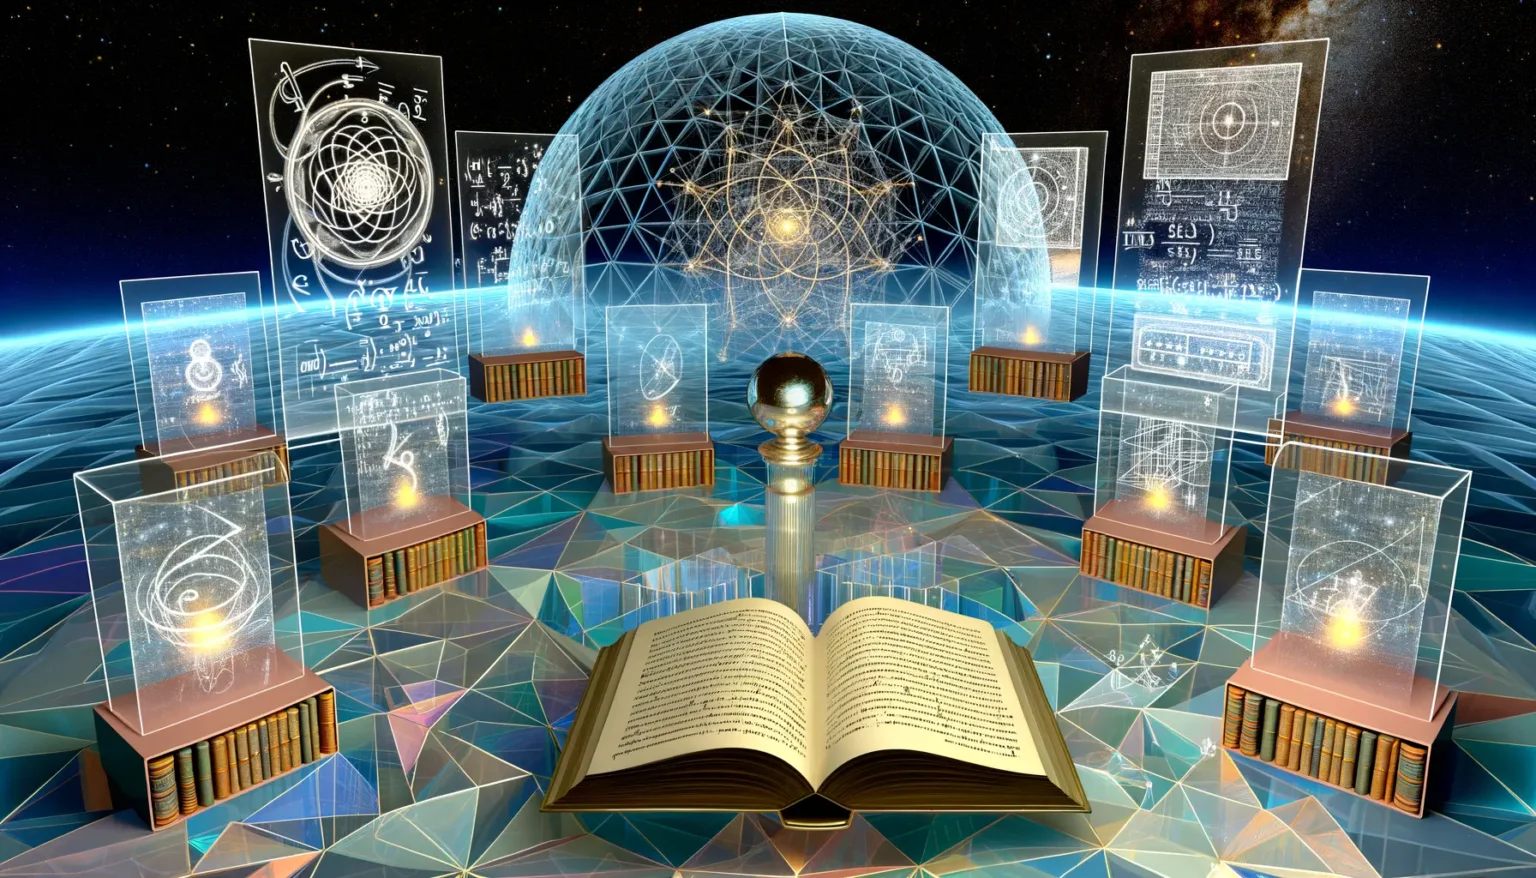 Digitales Konzeptbild, das Wissenschaft und Bildung thematisiert, mit einem geöffneten Buch im Vordergrund und darüber schwebenden holographischen Panels, die verschiedene wissenschaftliche und alchemistische Symbole darstellen. In der Mitte erhebt sich eine glühende Kugel innerhalb einer transparenten Sphäre. Das Bild ist vor einem kosmischen Hintergrund mit Sternen und einem Netz aus geometrischen Formen angeordnet.